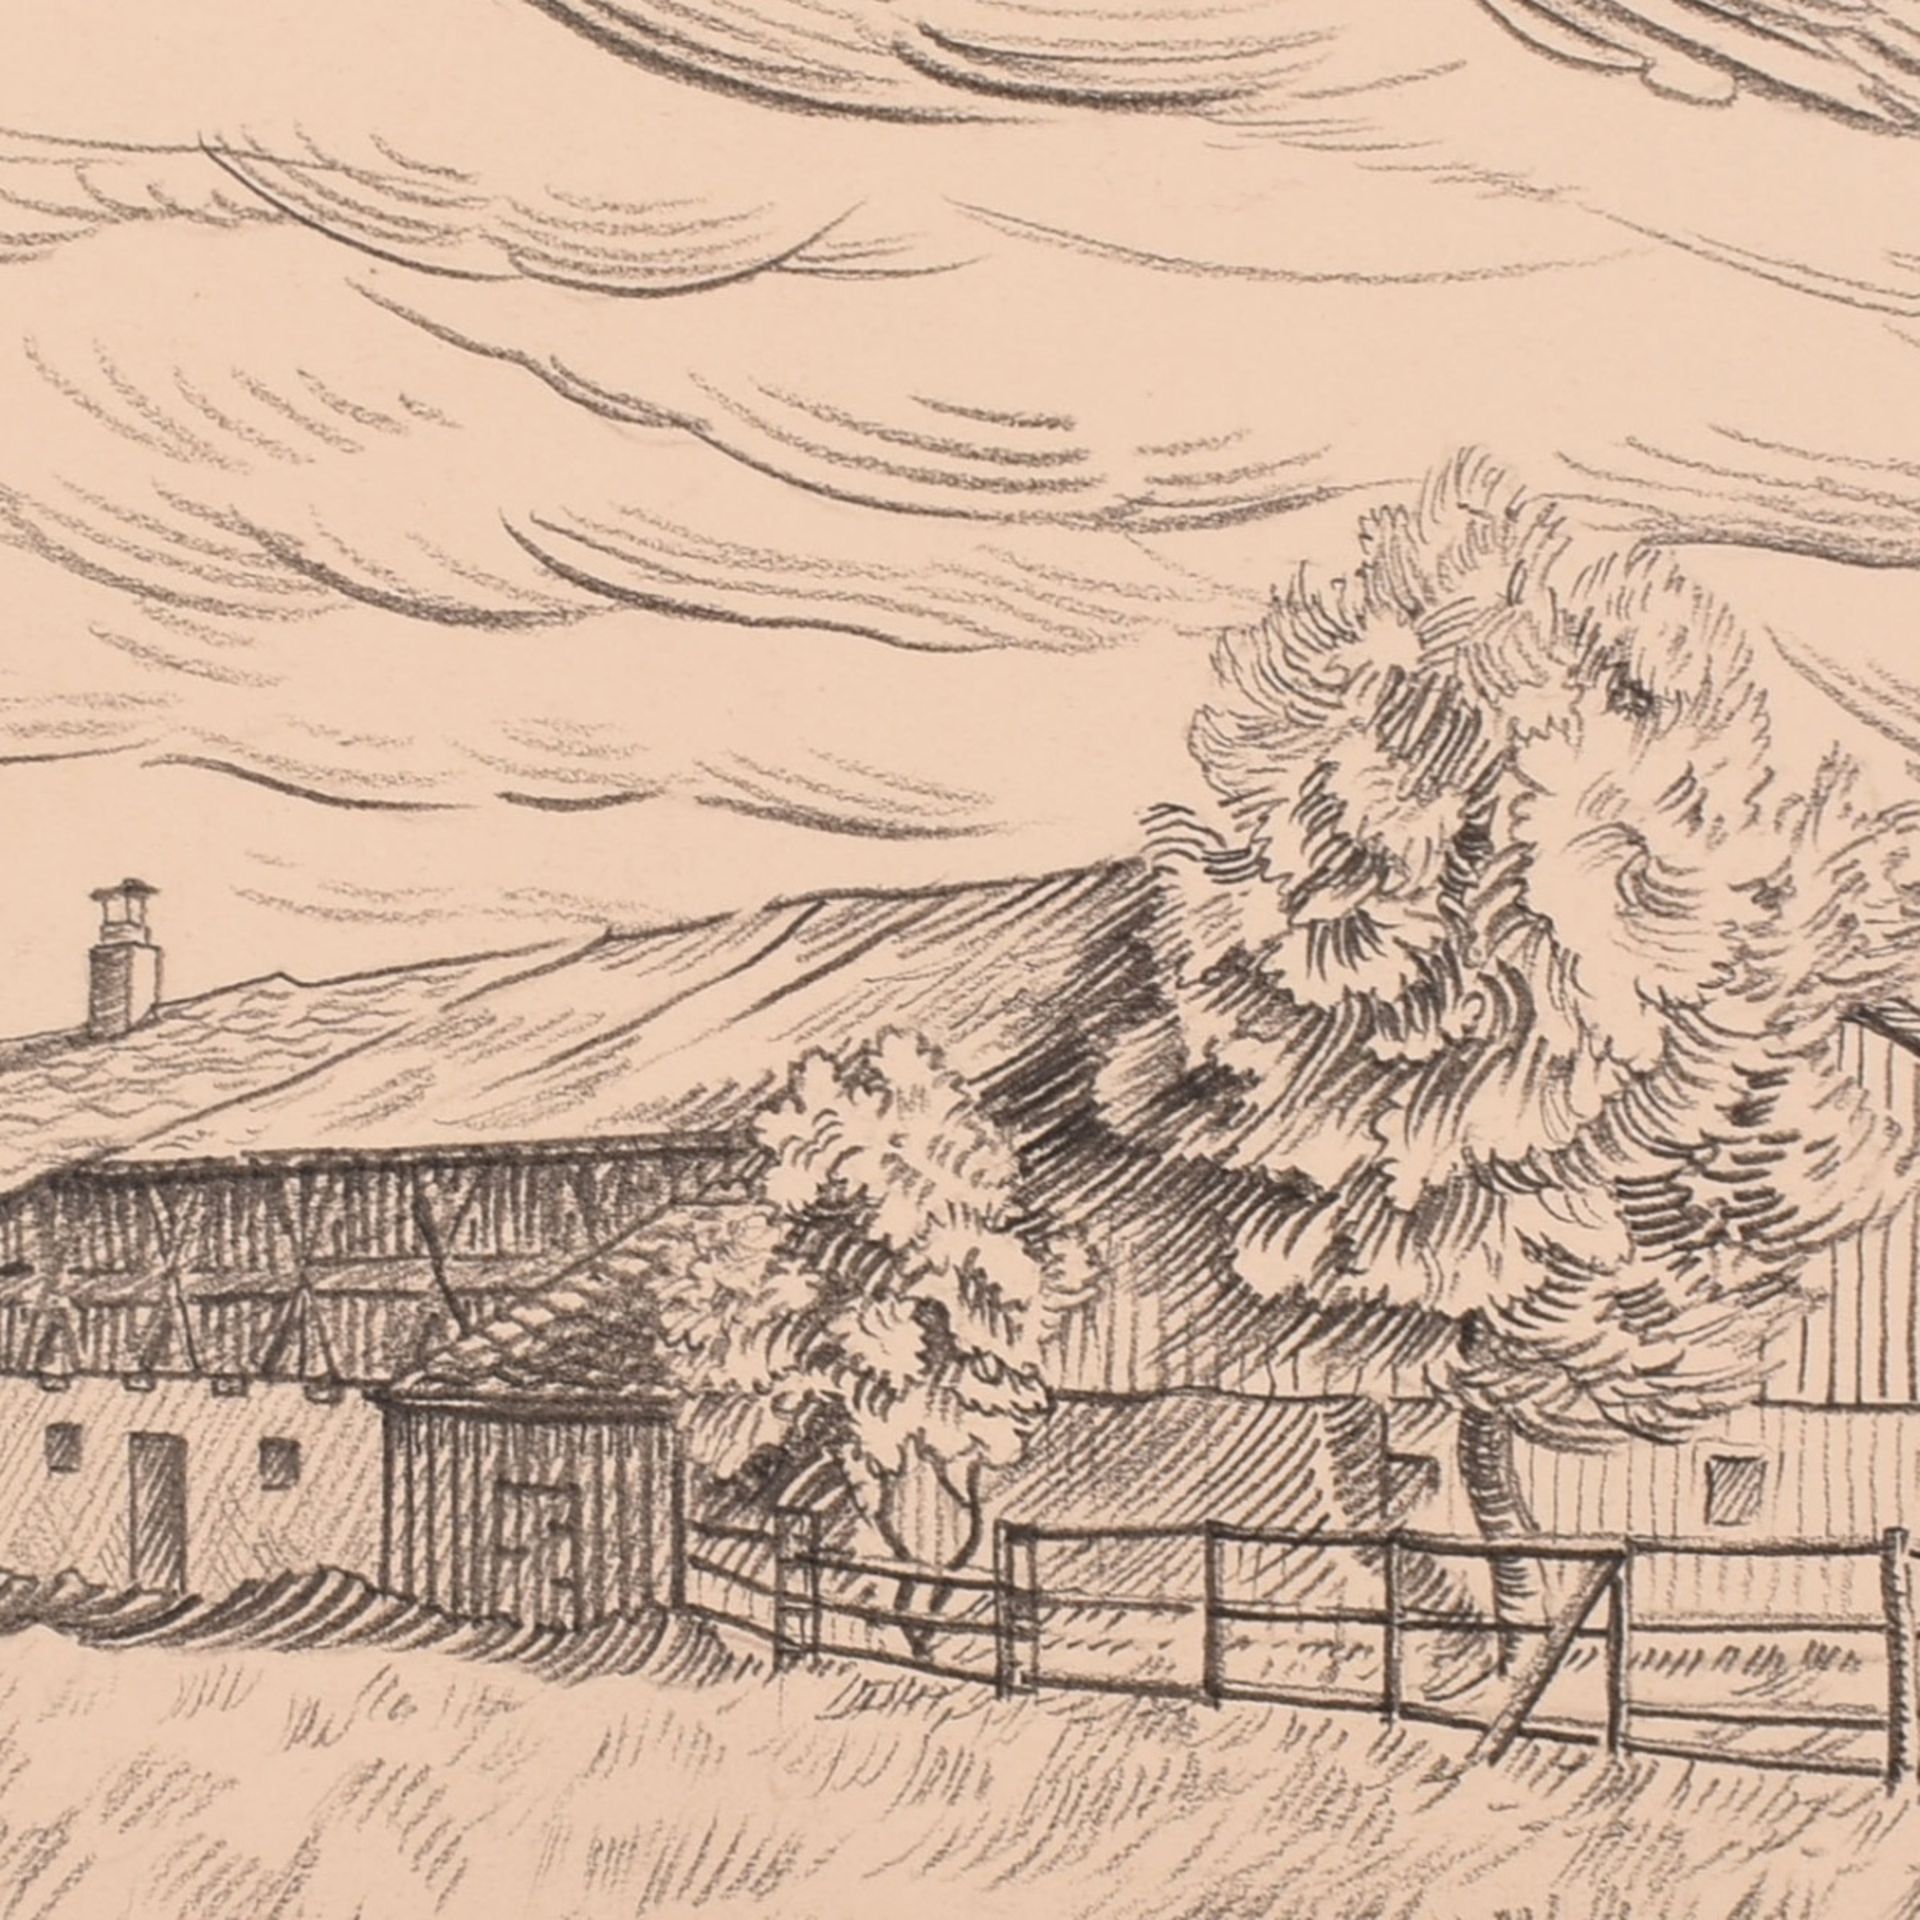 Scharl, Josef (1896 München - 1954 New York City) Zeichnung in Blei, Bauernhof in weiter Landschaf